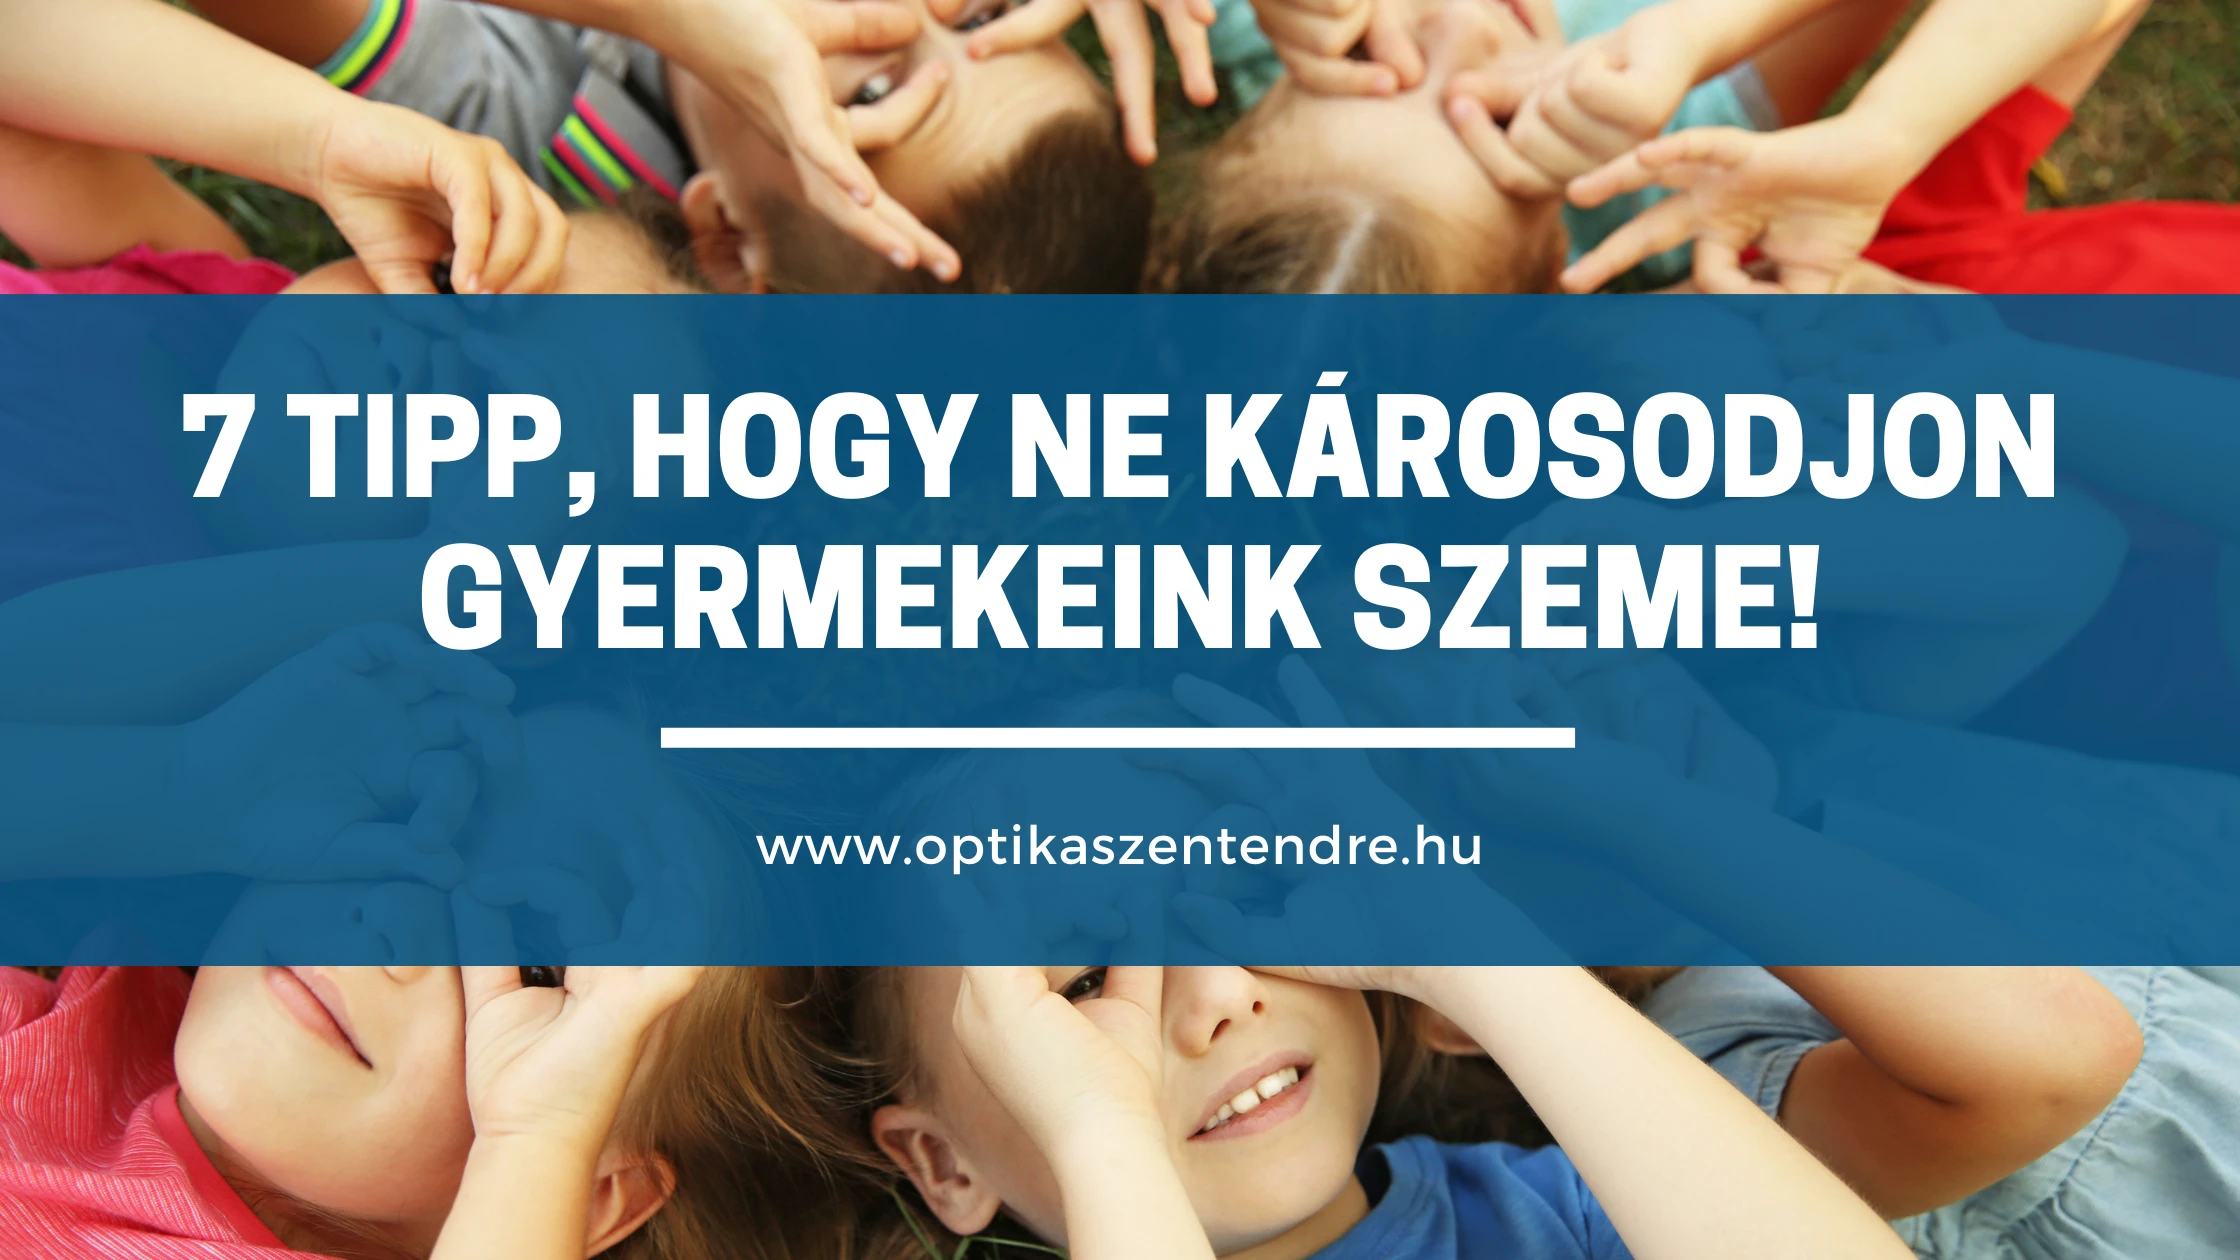 7 TIPP, hogy ne károsodjon gyermekeink szeme!